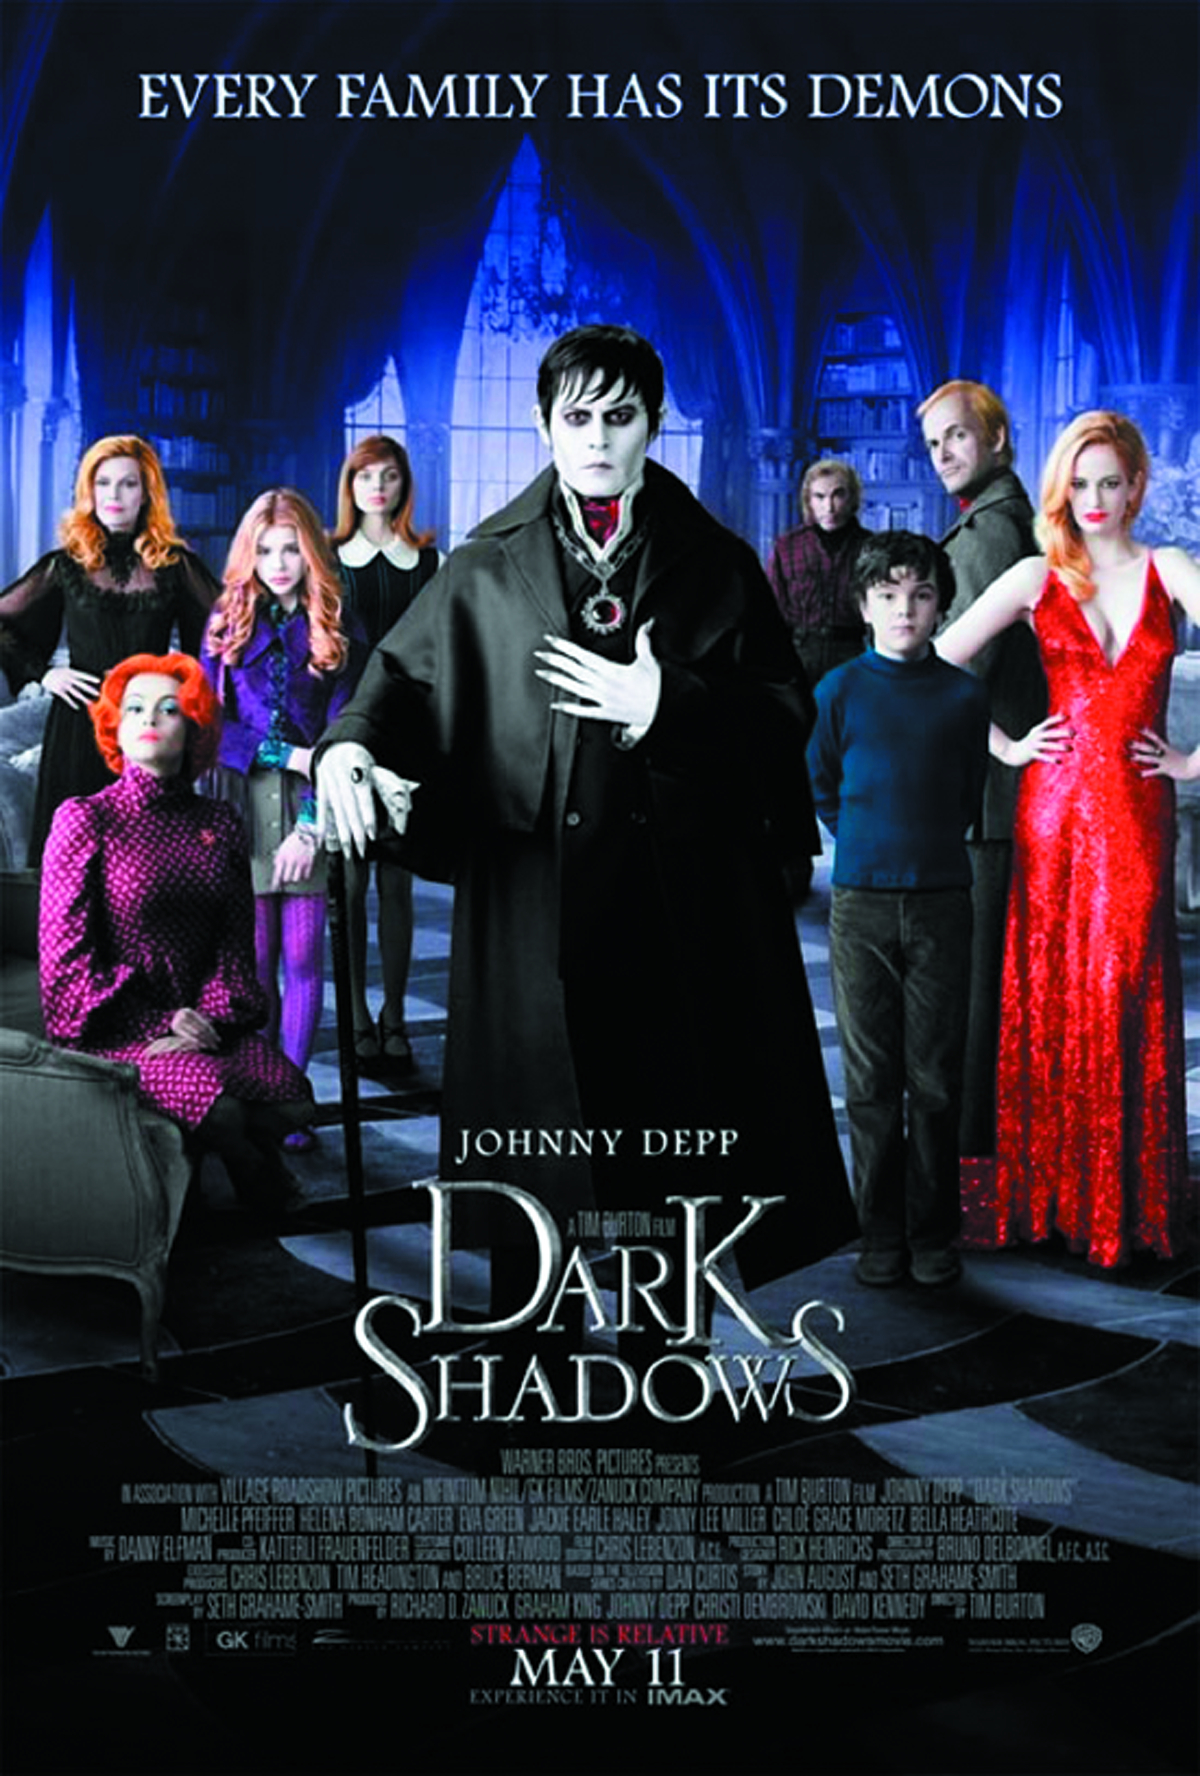 DARK SHADOWS 2012 DVD